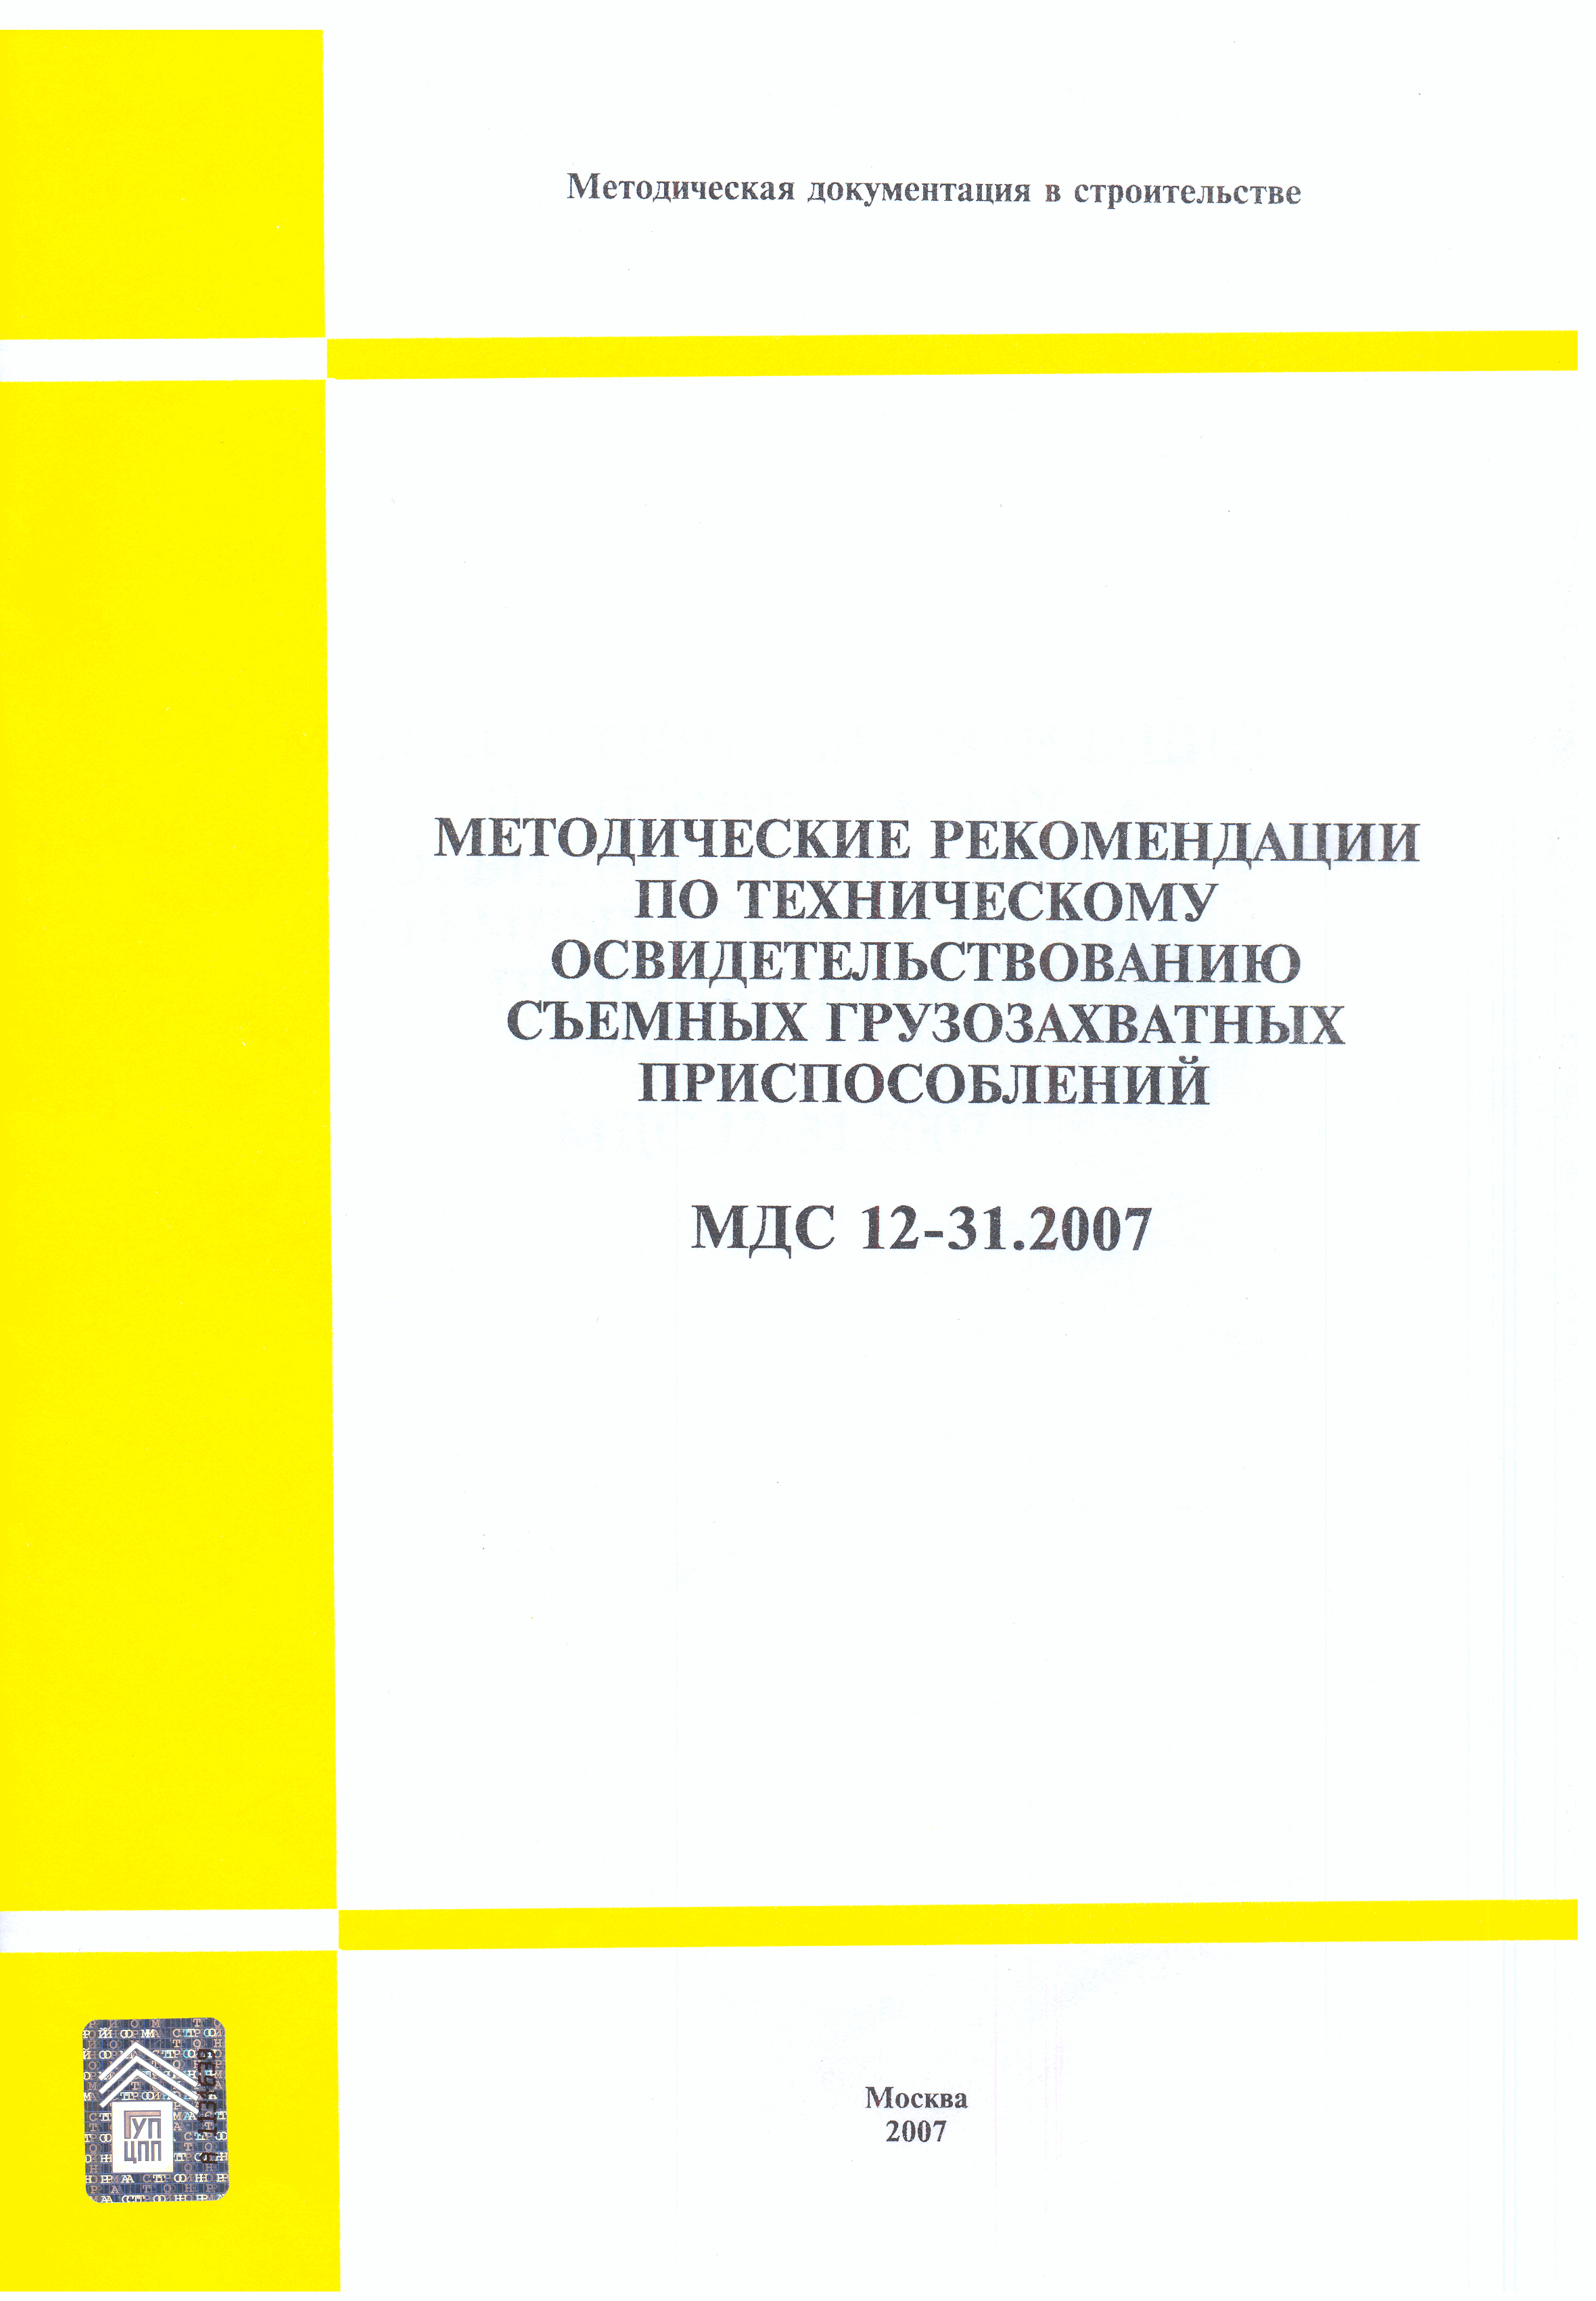 МДС 12-31.2007